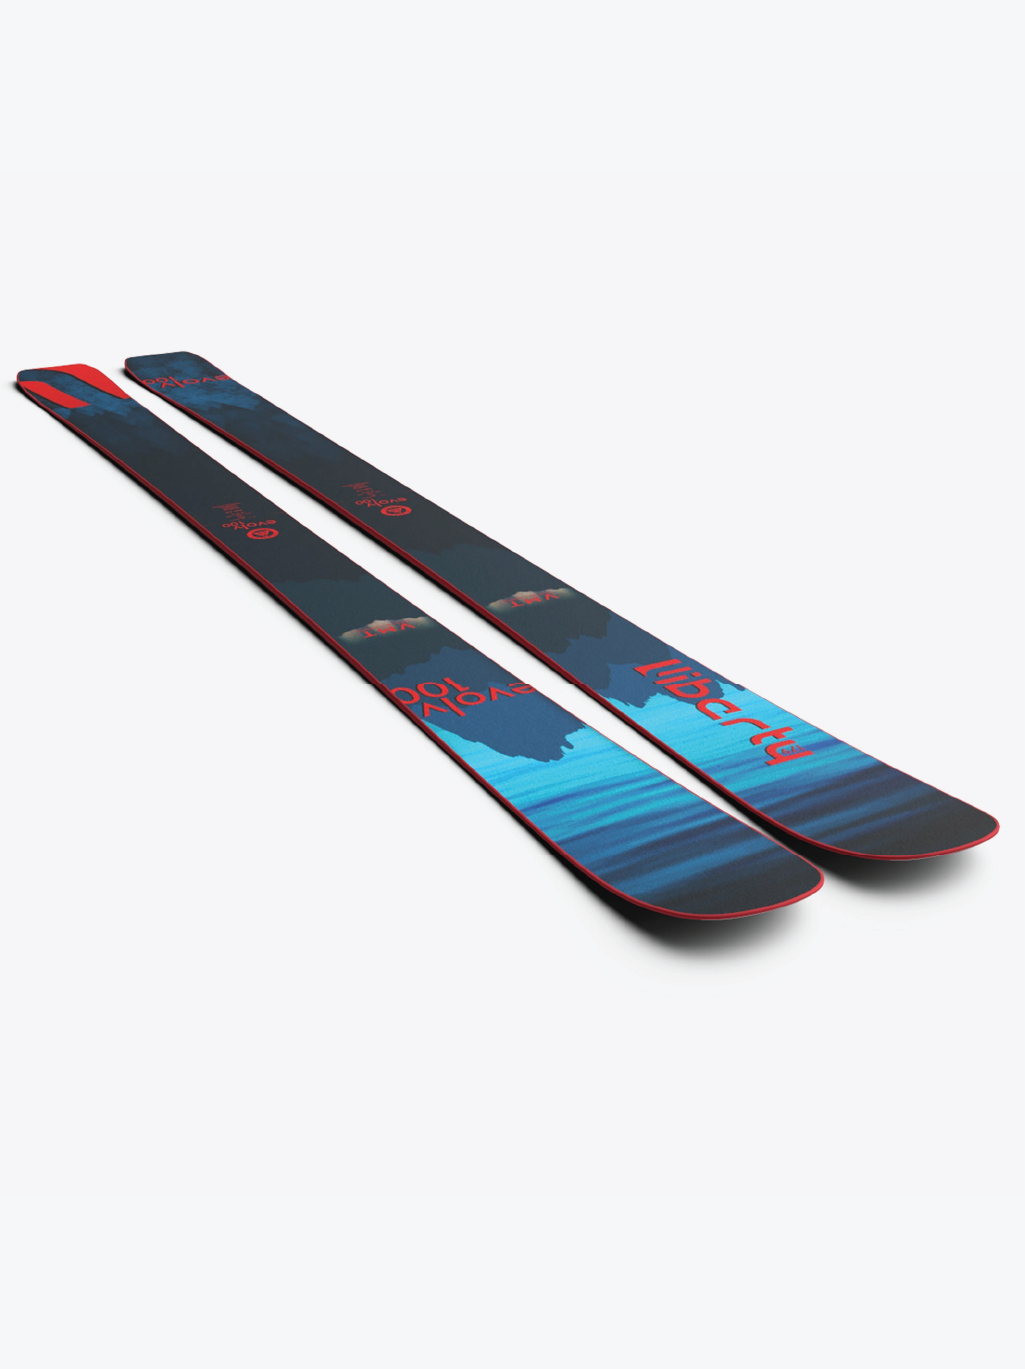 Liberty Skis 2022 Skis Liberty Skis Evolv 100 - 2022